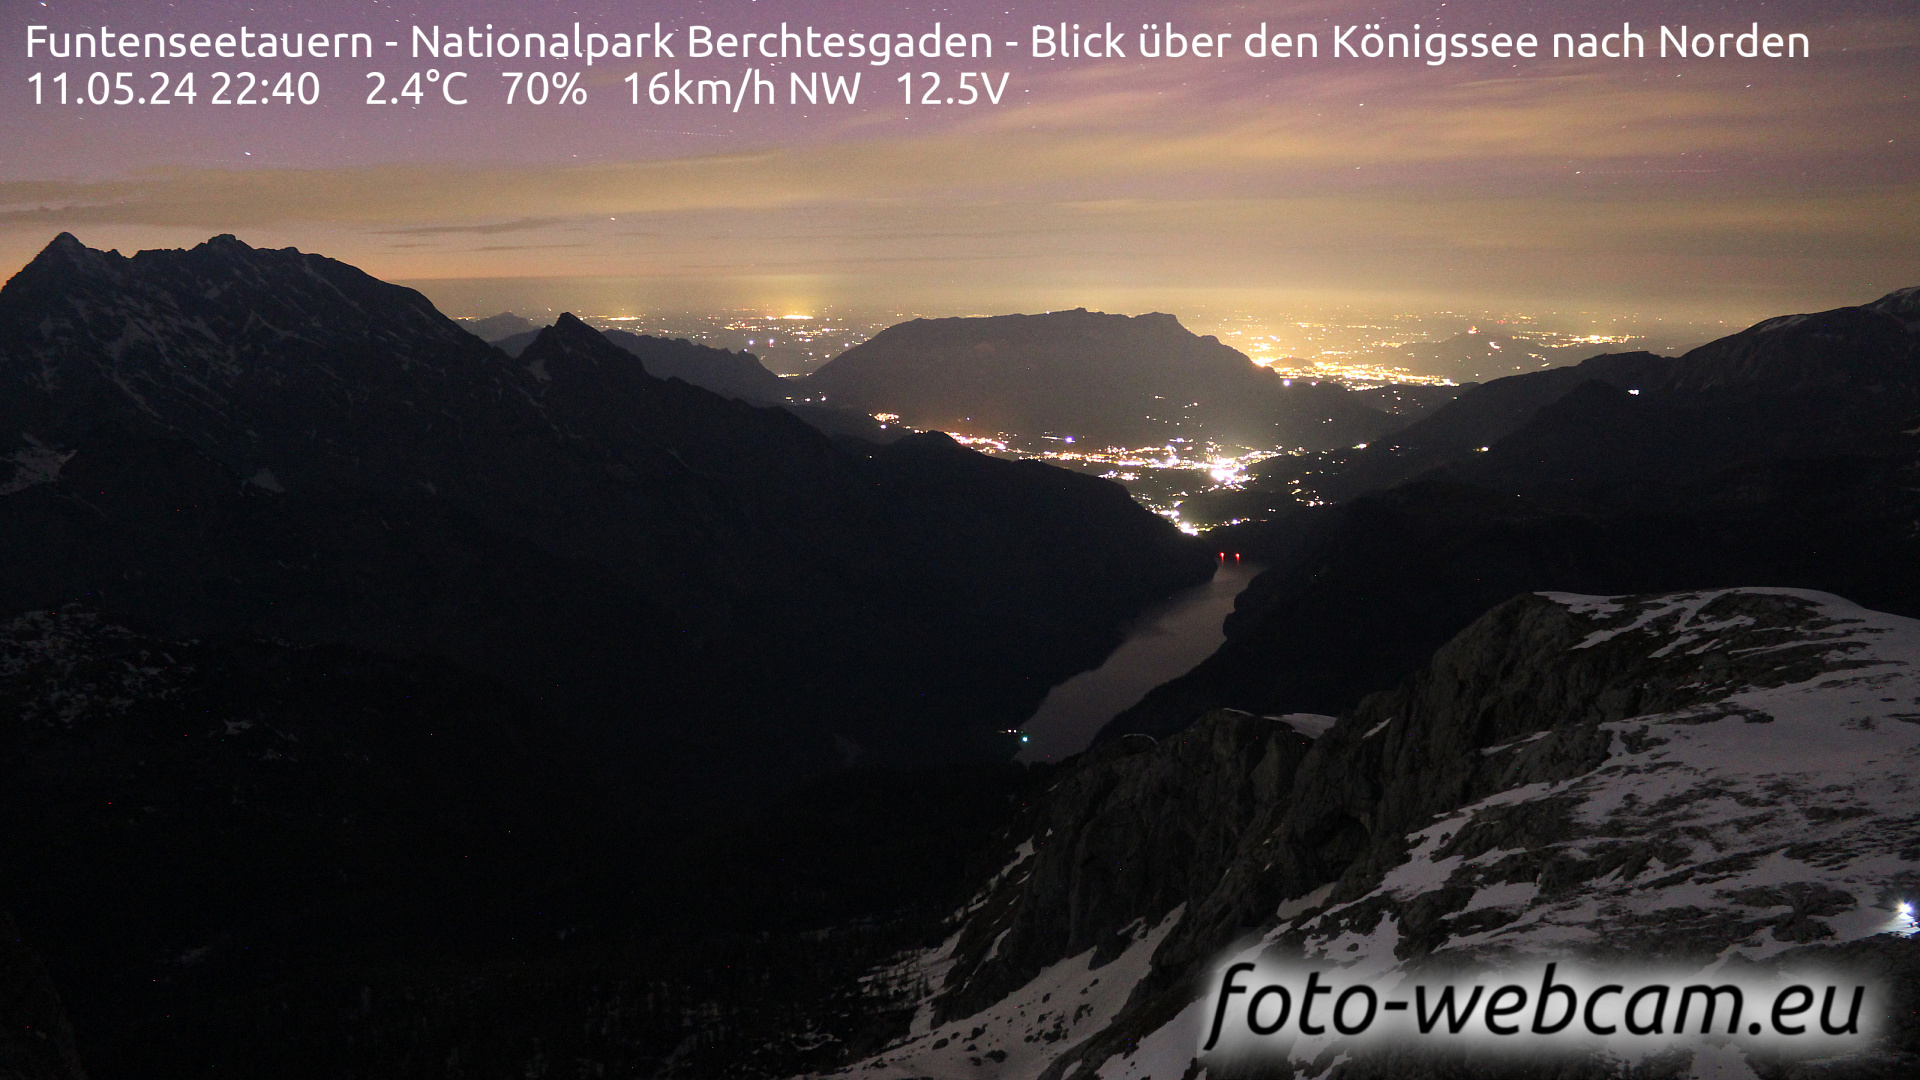 Berchtesgaden Thu. 22:48